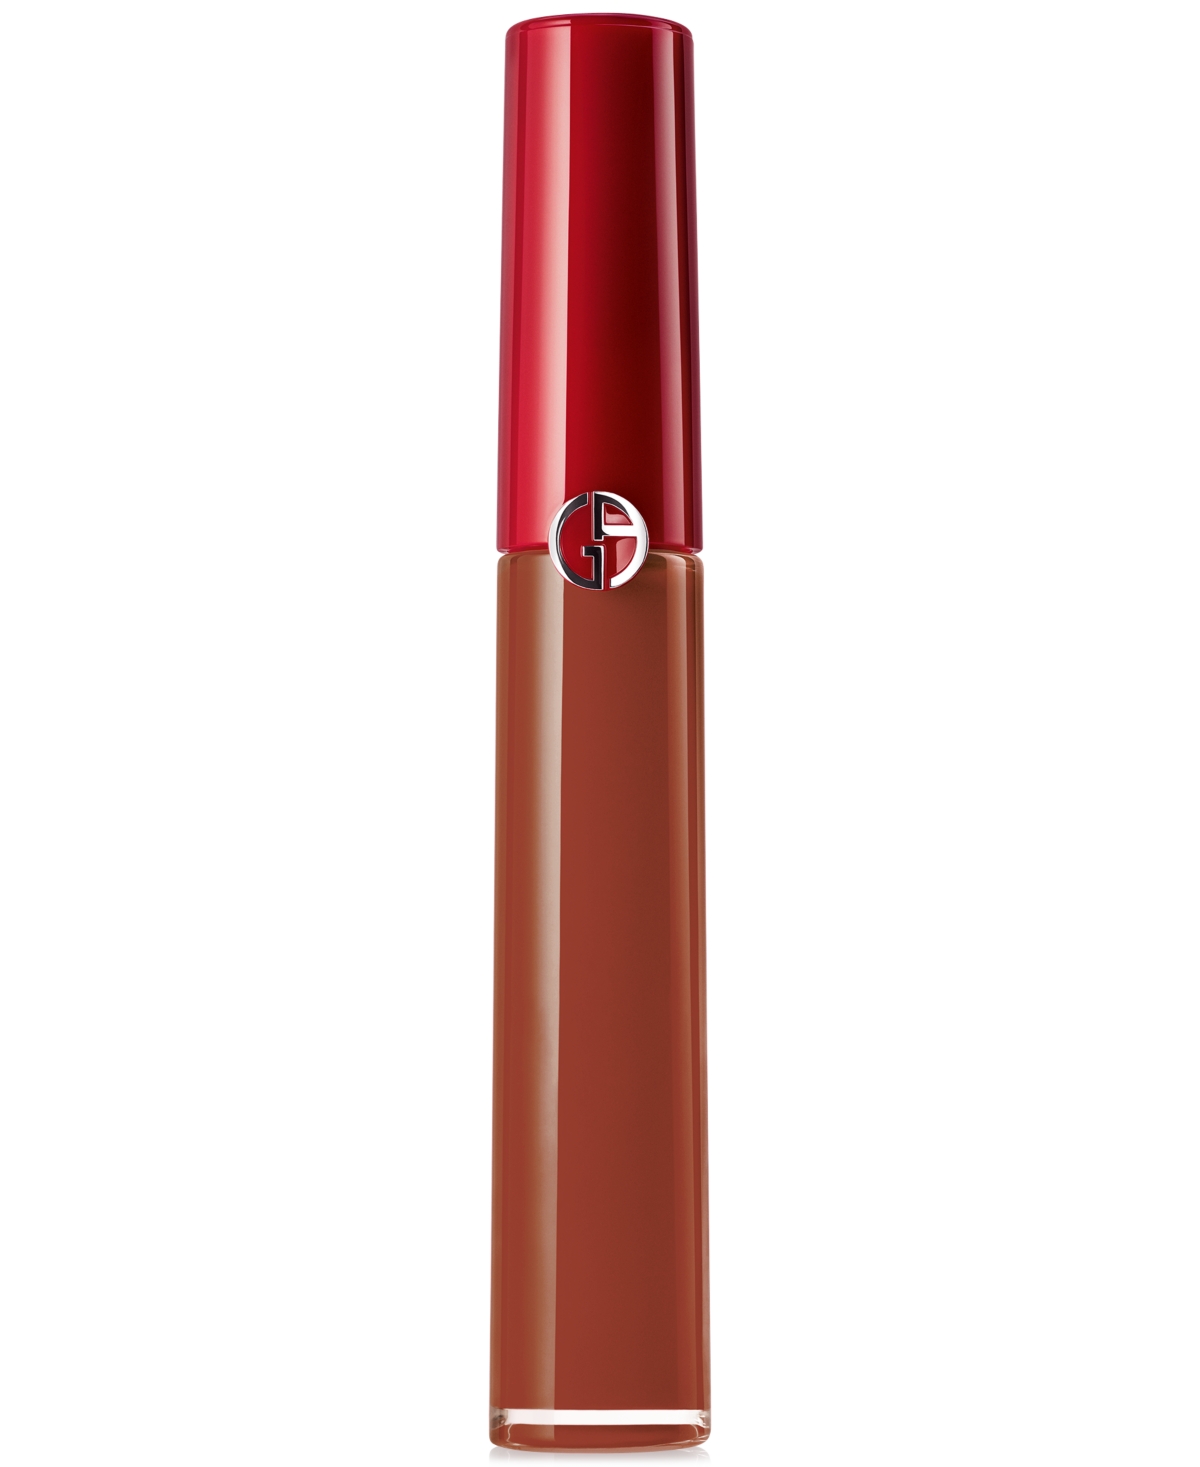 Giorgio Armani Armani Beauty Lip Maestro Liquid Matte Lipstick In Venetian Red